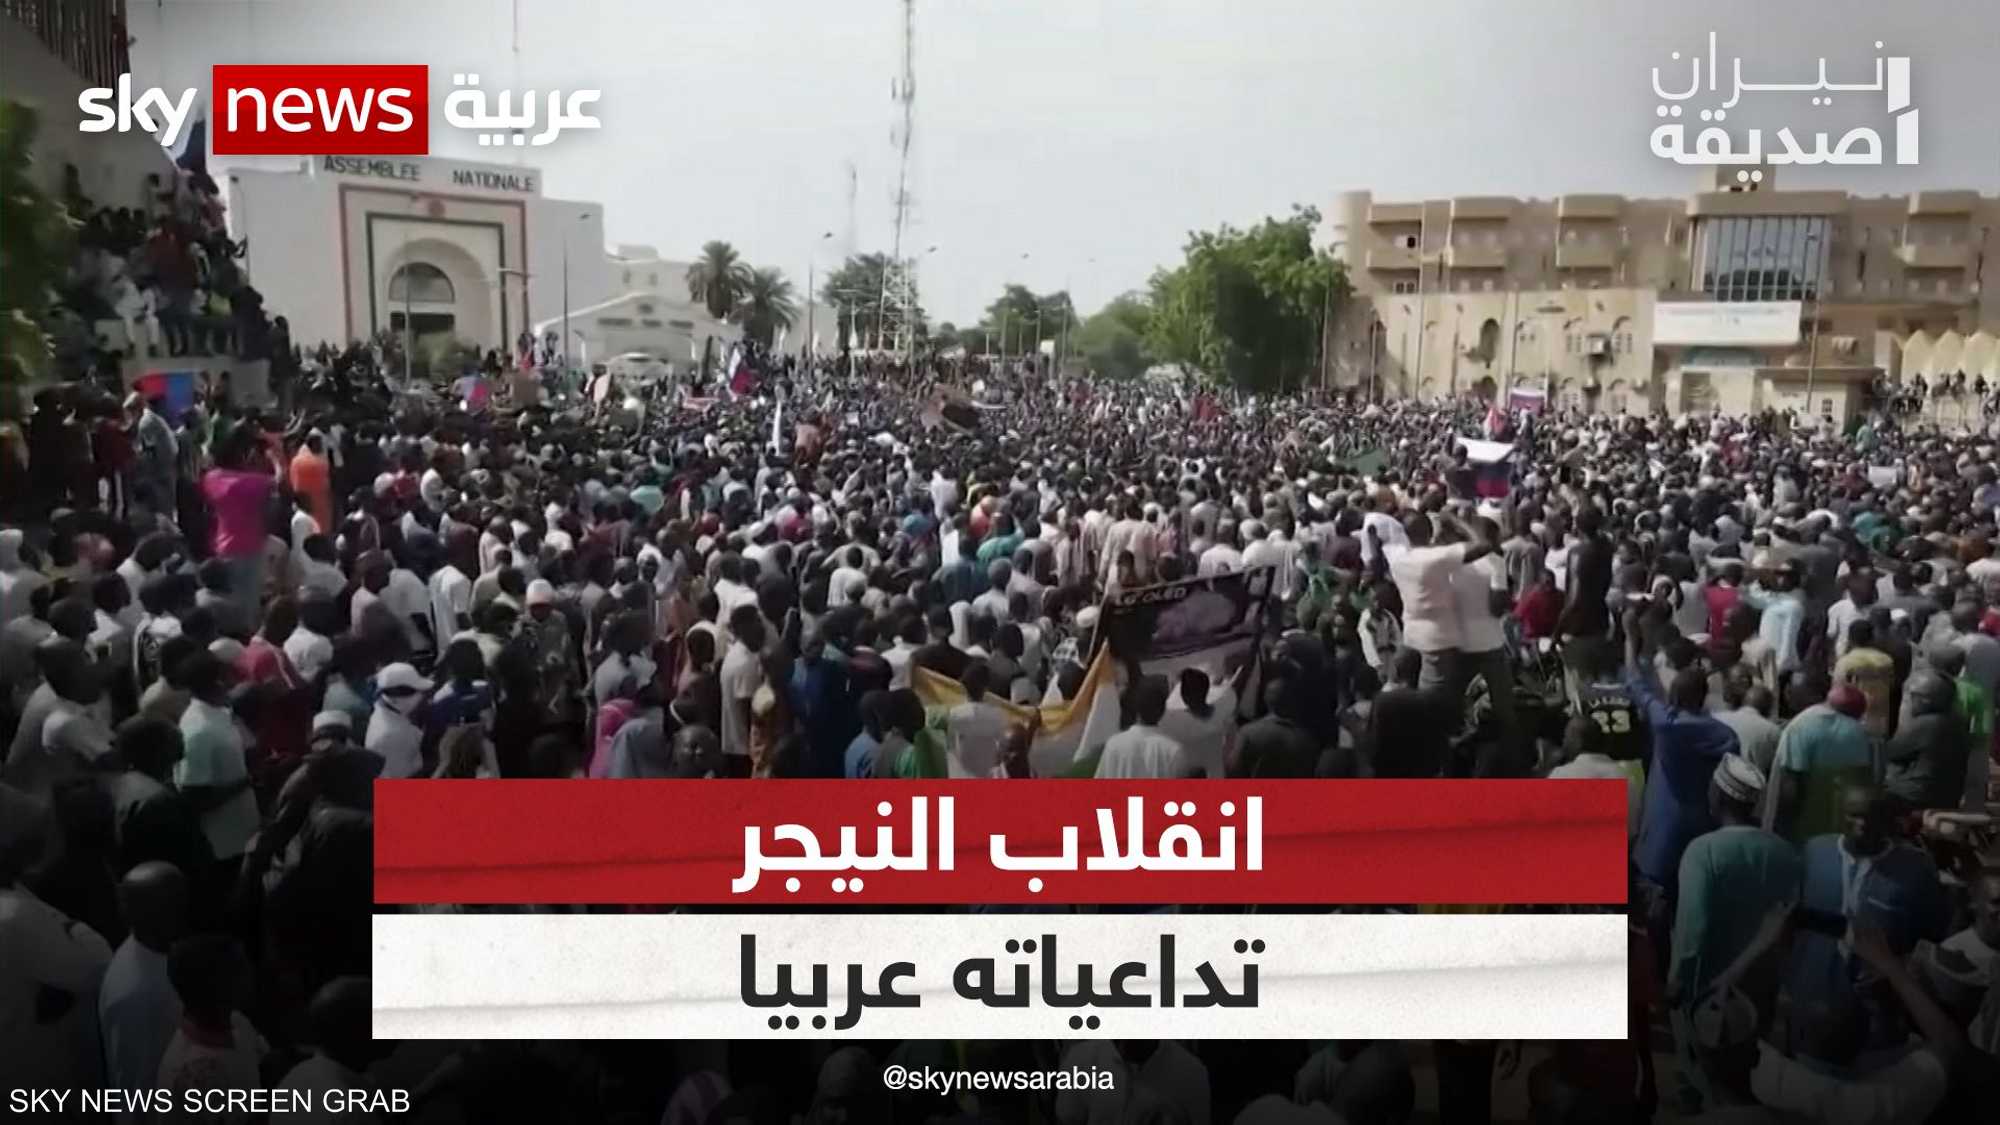 ما تداعيات انقلاب النيجر عربيا؟